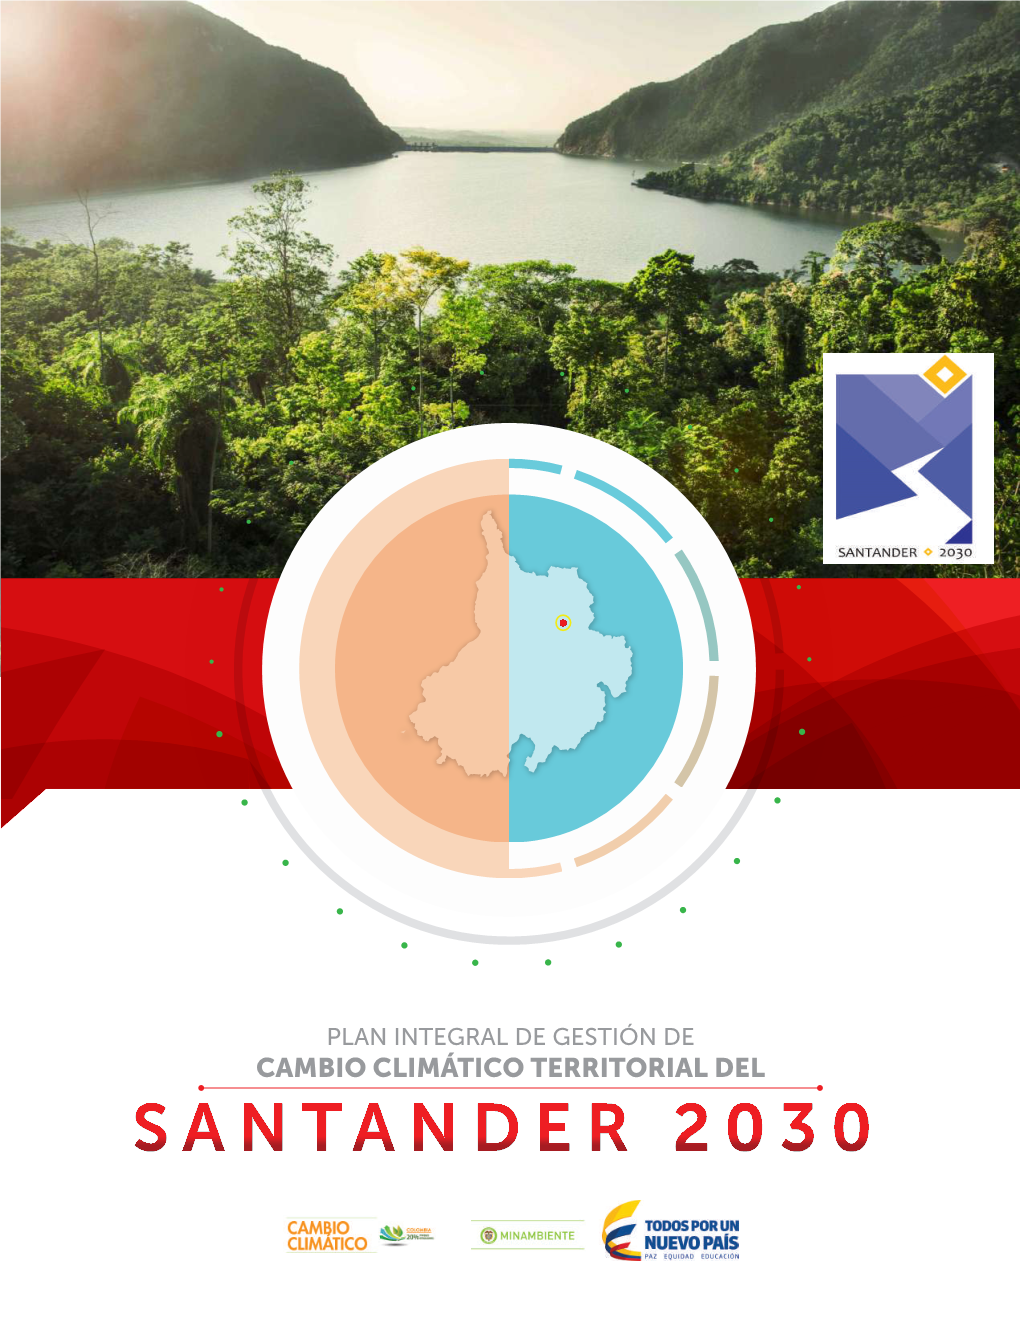 Santander 2030 Plan Integral De Gestión De Cambio Climático Territorial Del